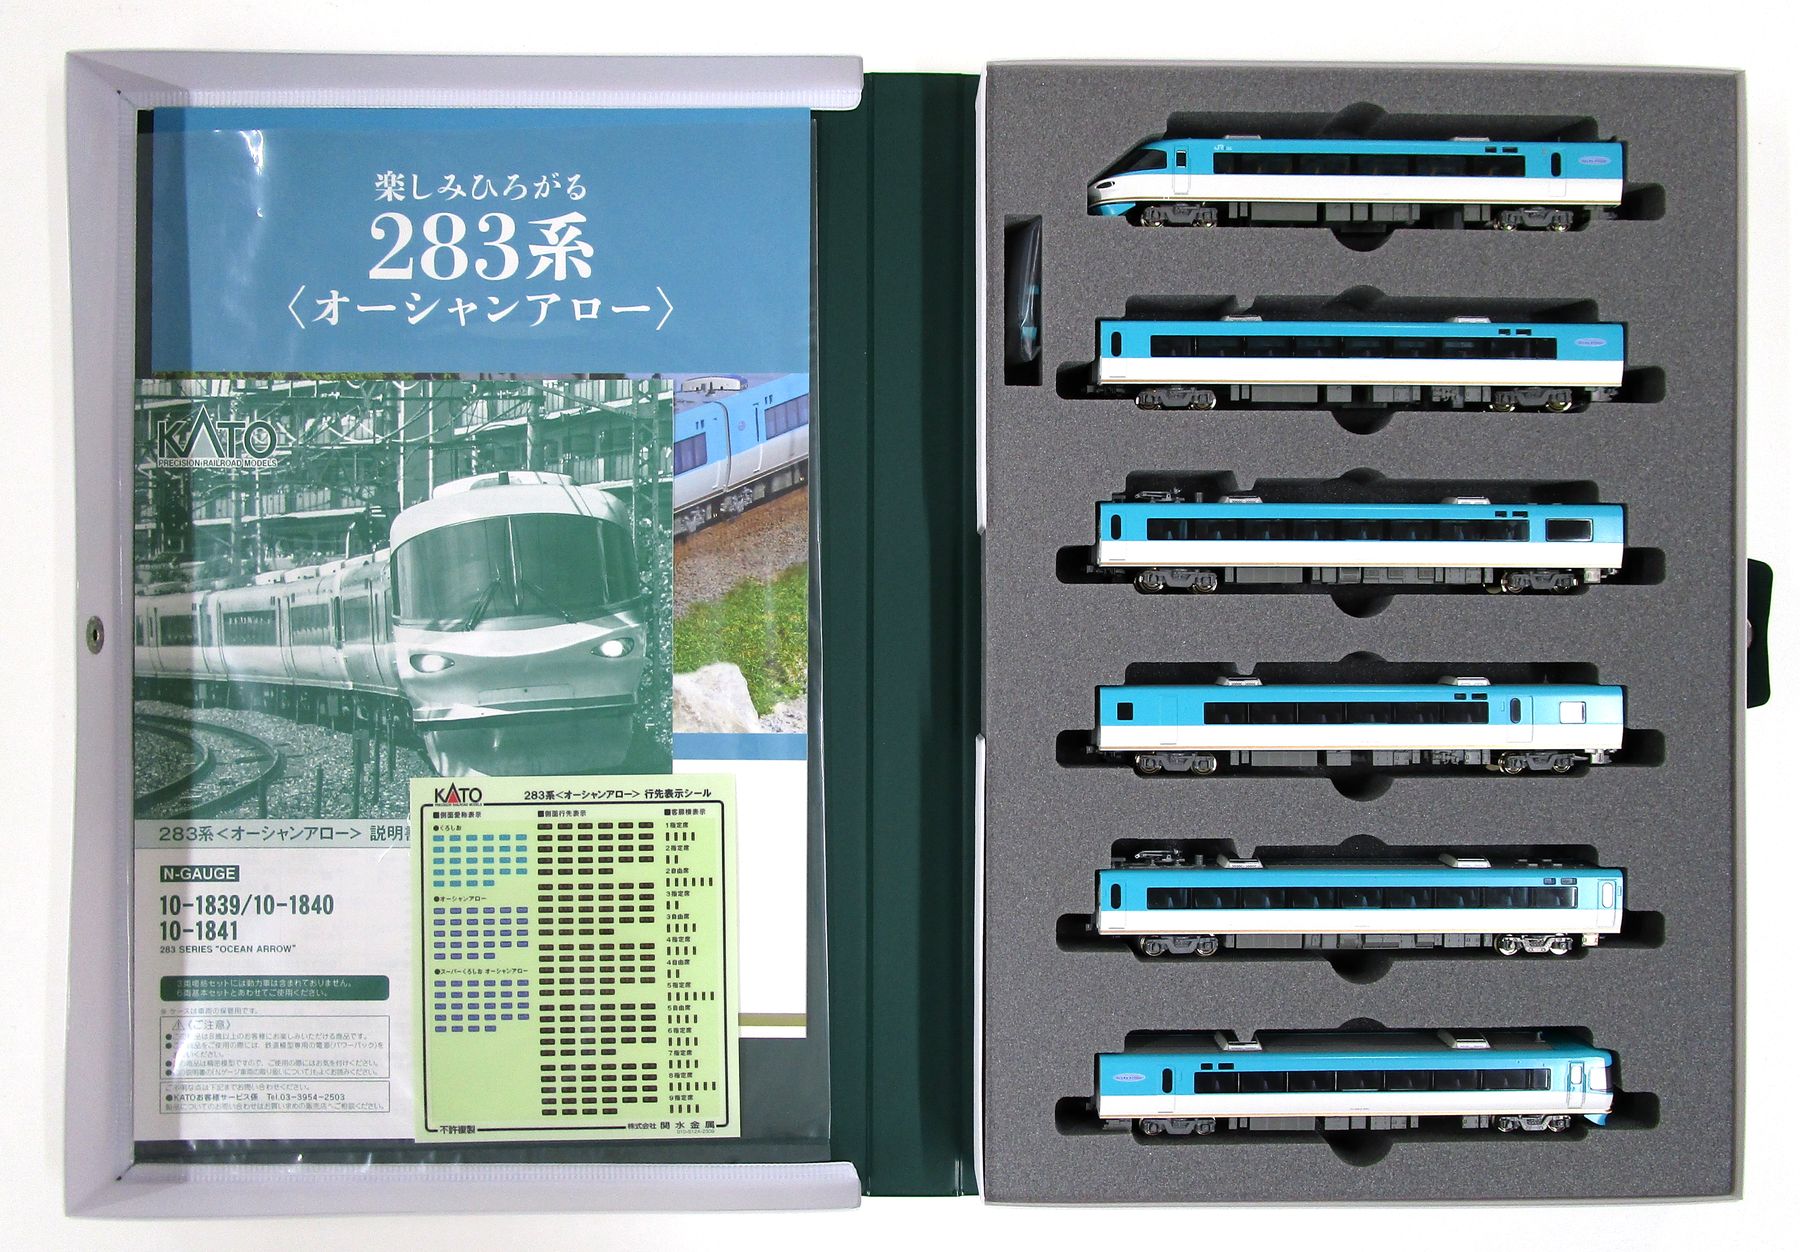 公式]鉄道模型(10-1840283系「オーシャンアロー」6両基本セット)商品 